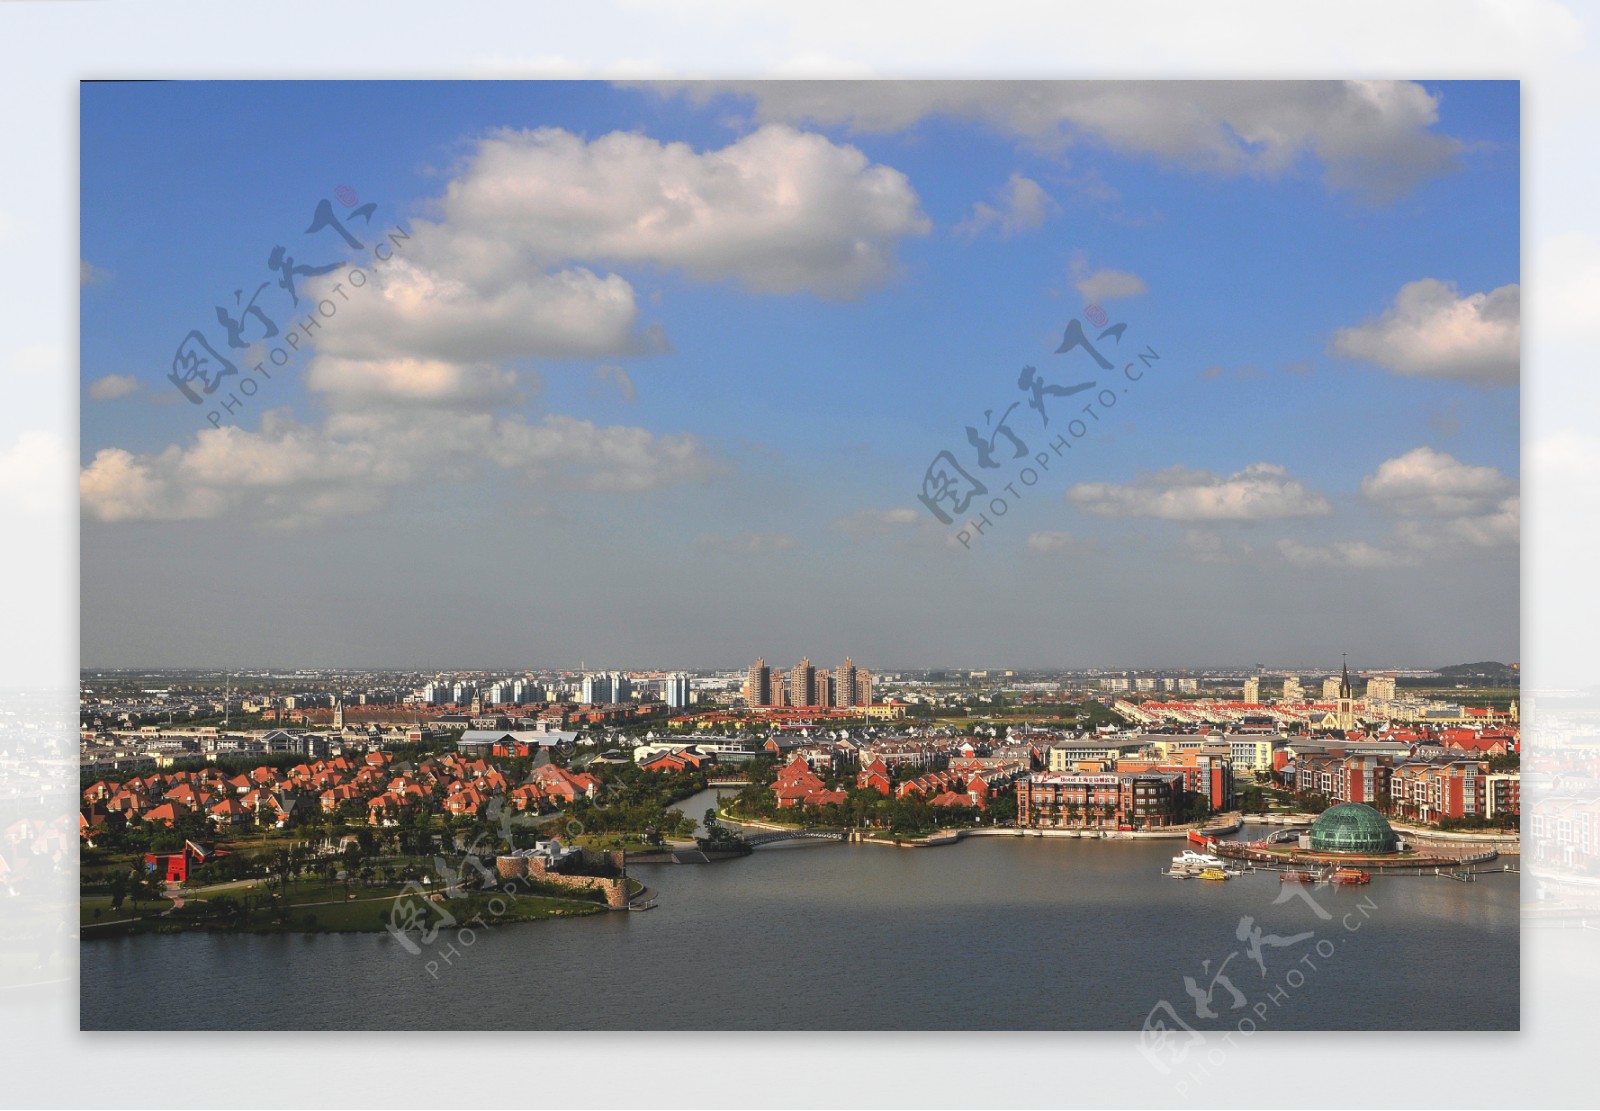 上海松江新城区景观图片